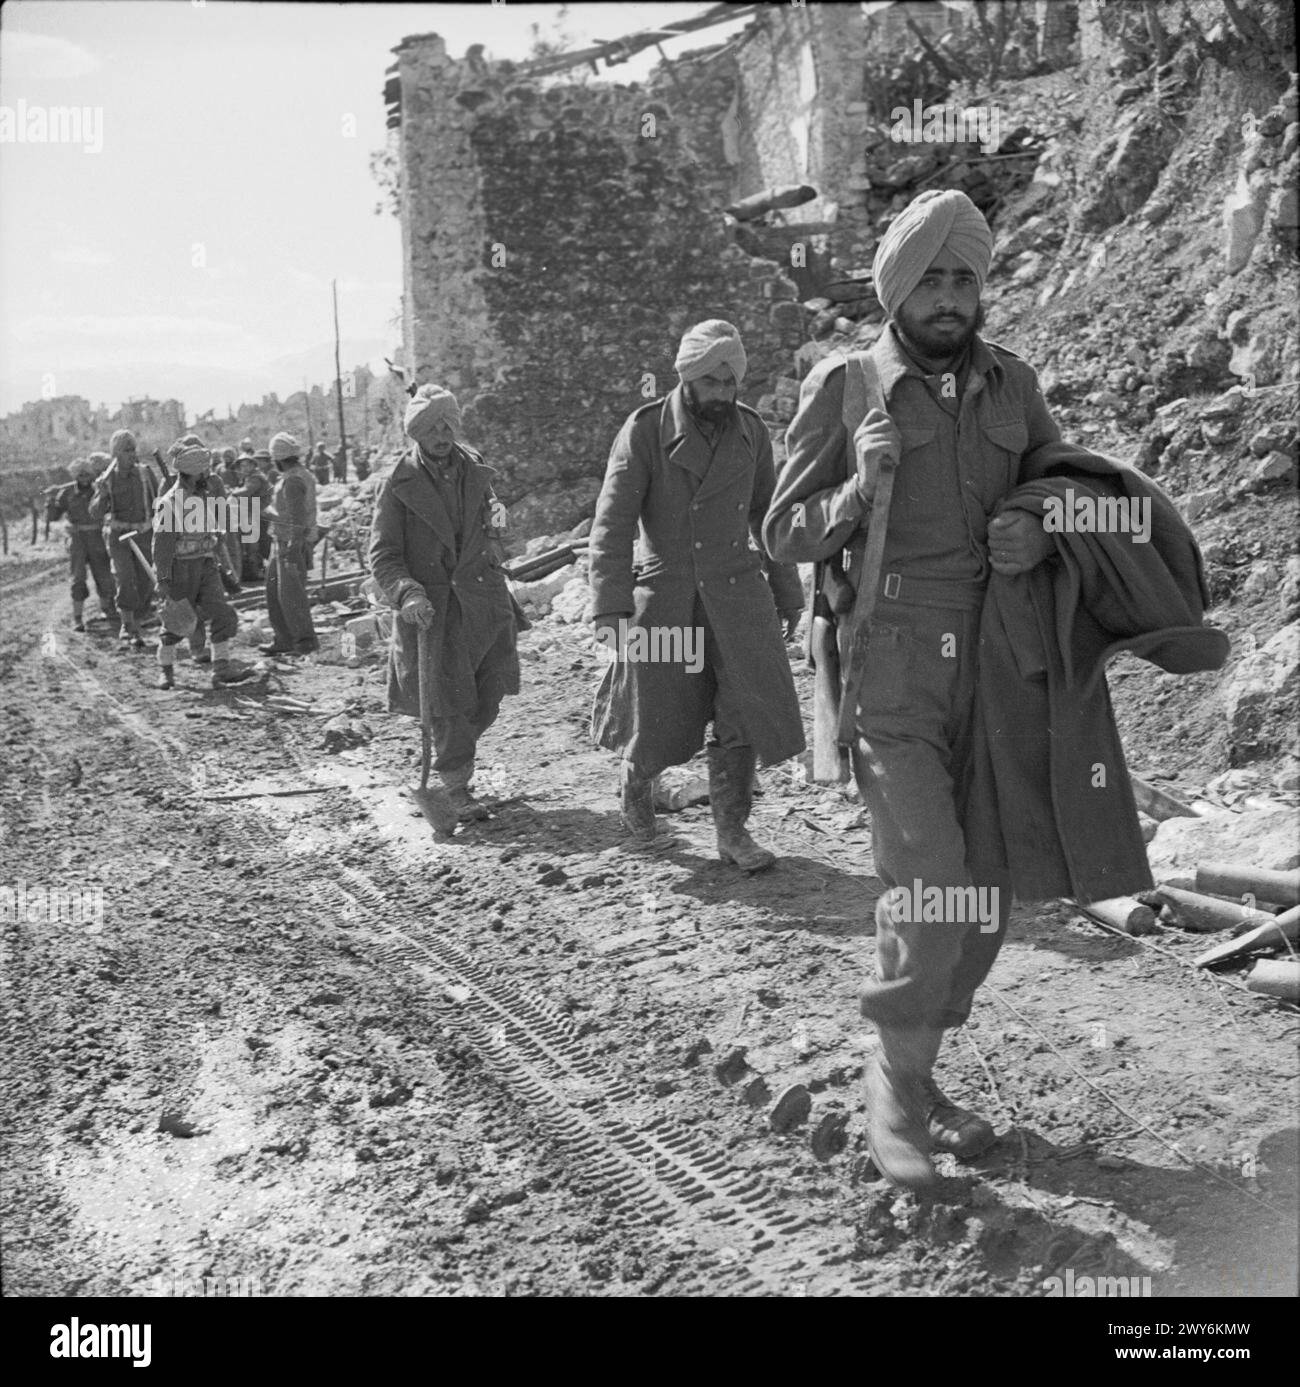 LES BATAILLES DE MONTE CASSINO, JANVIER-MAI 1944 - deuxième phase 15 février - 10 mai 1944 : les troupes indiennes passent des bâtiments brisés par la bombe à la périphérie de la ville de Cassino. , Armée indienne britannique Banque D'Images